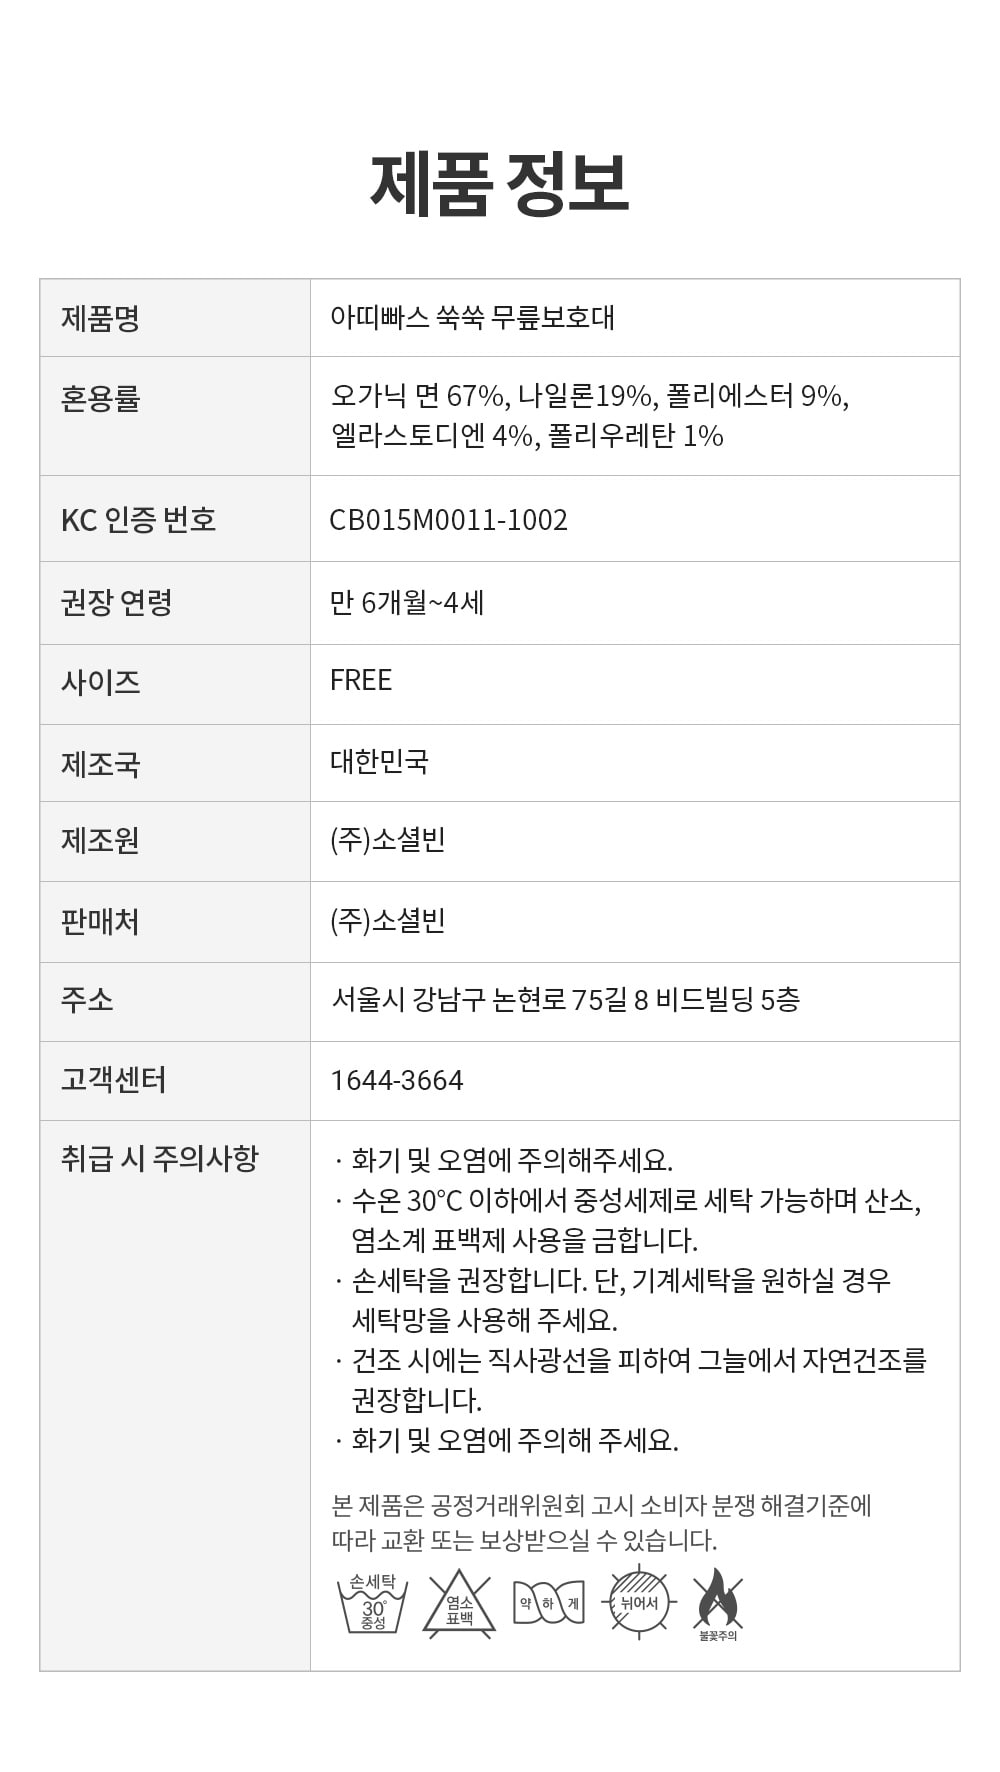 아띠빠스 X 베베펄스 쑥쑥 무릎보호대 제품정보